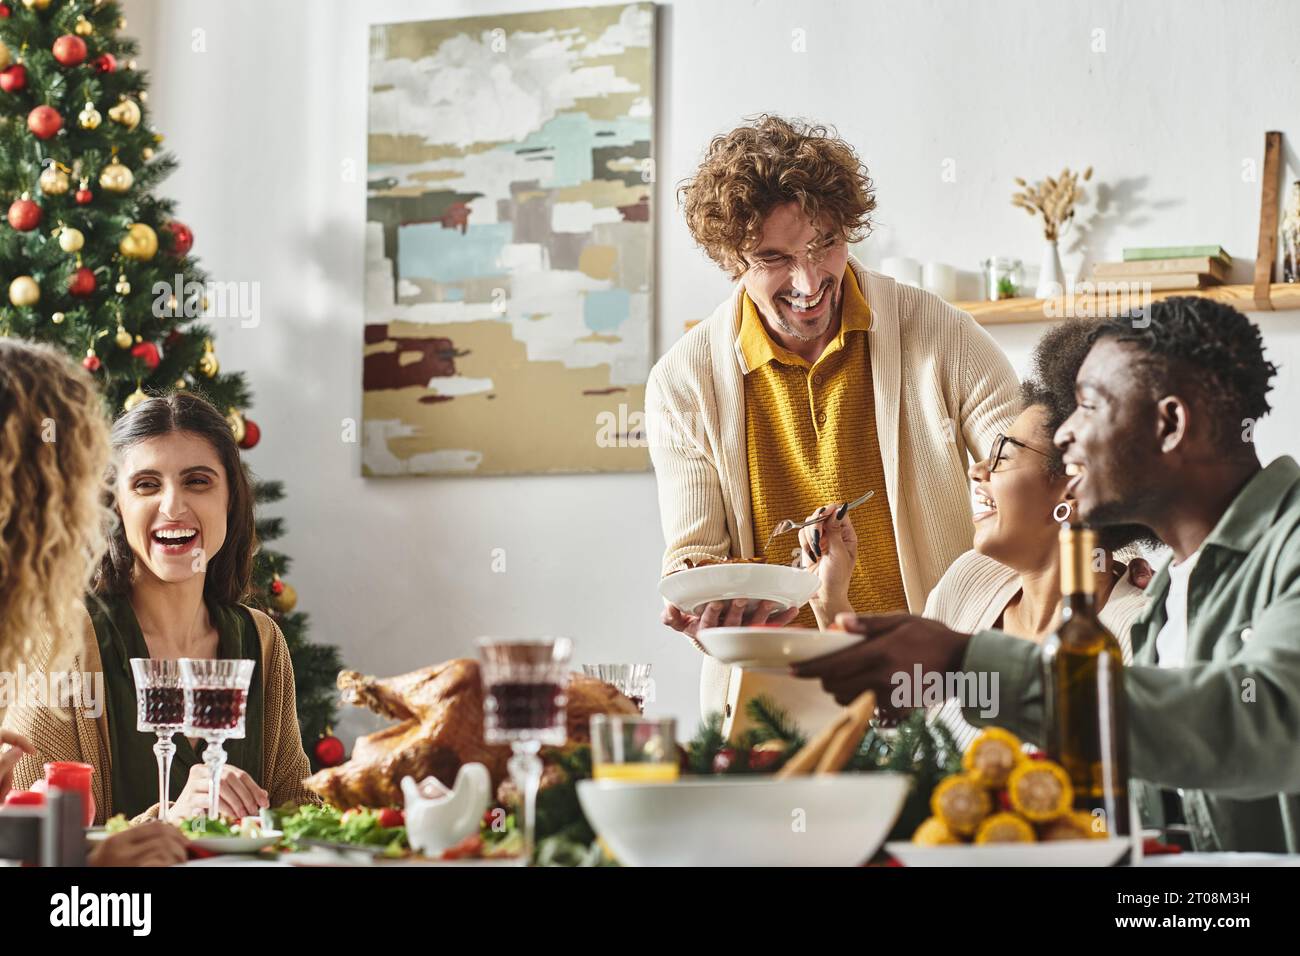 Grande famille multiculturelle joyeuse assise à la table de Noël riant et appréciant la fête des fêtes Banque D'Images